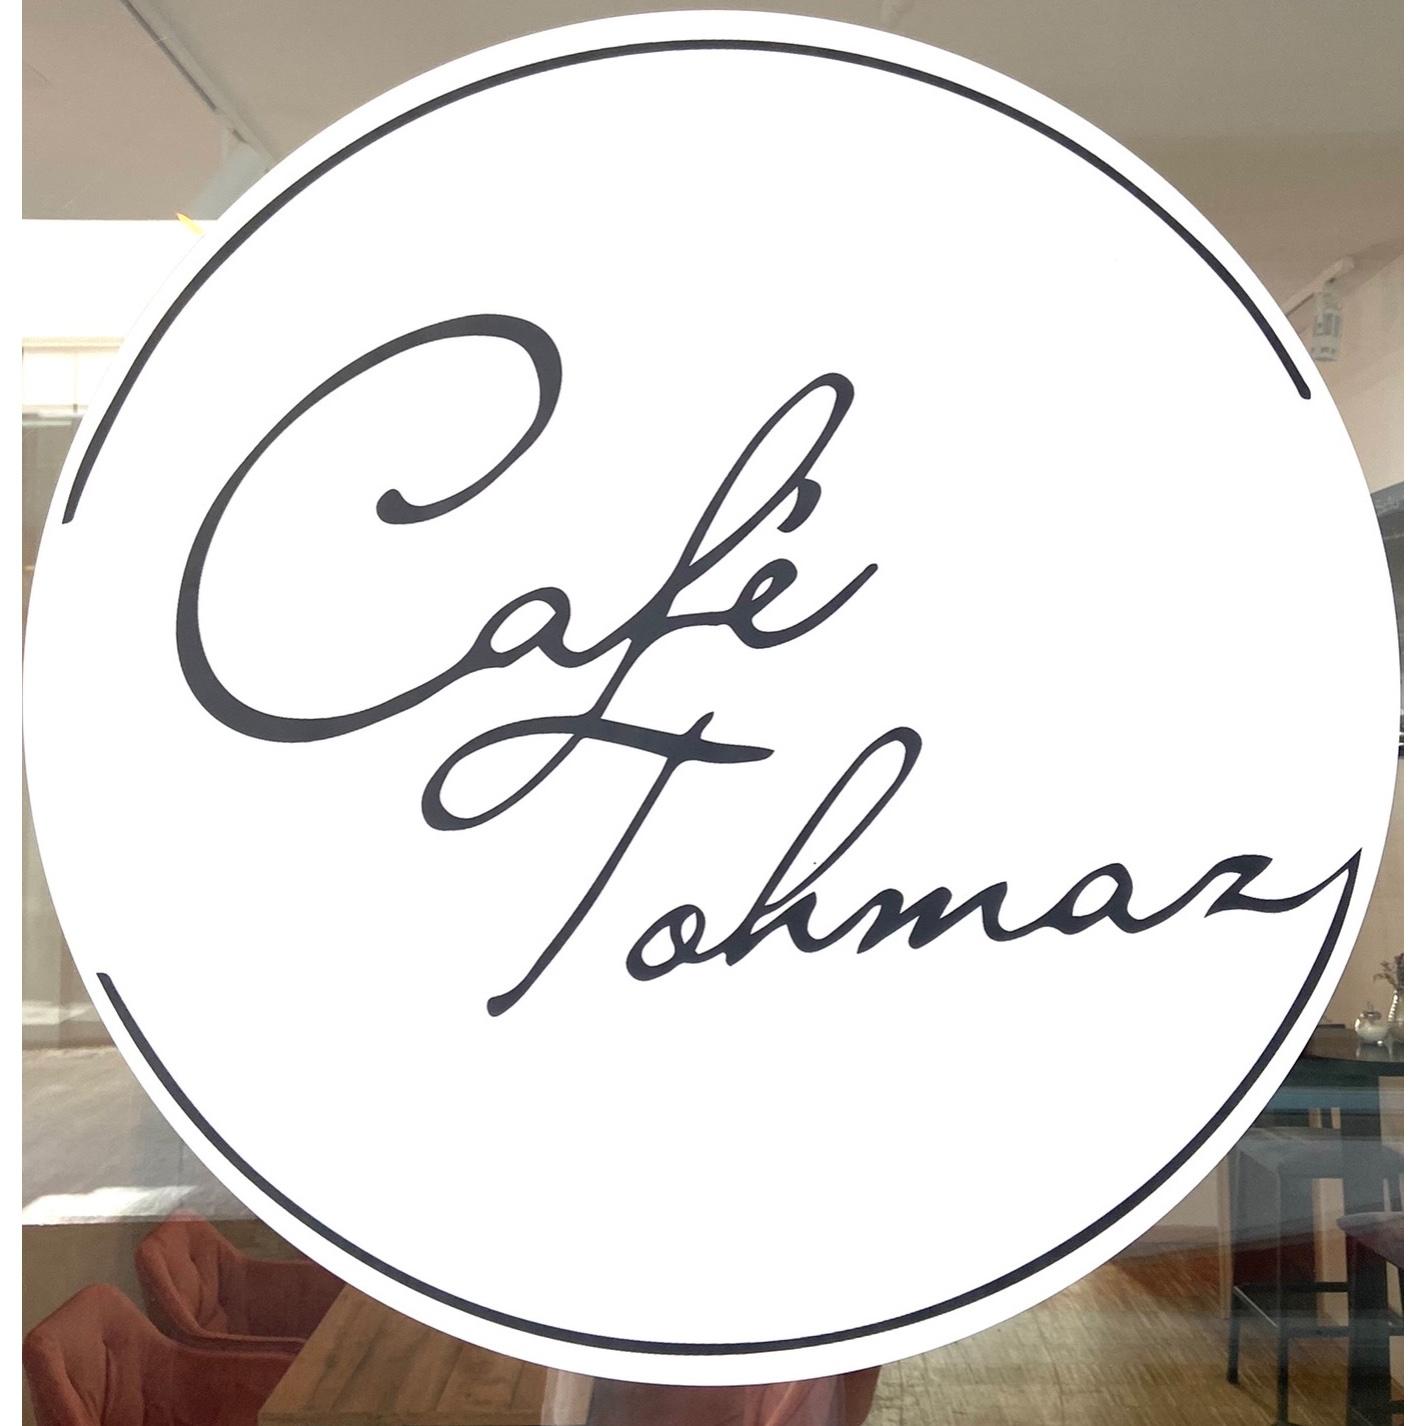 Café Tohmaz in Würzburg - Logo